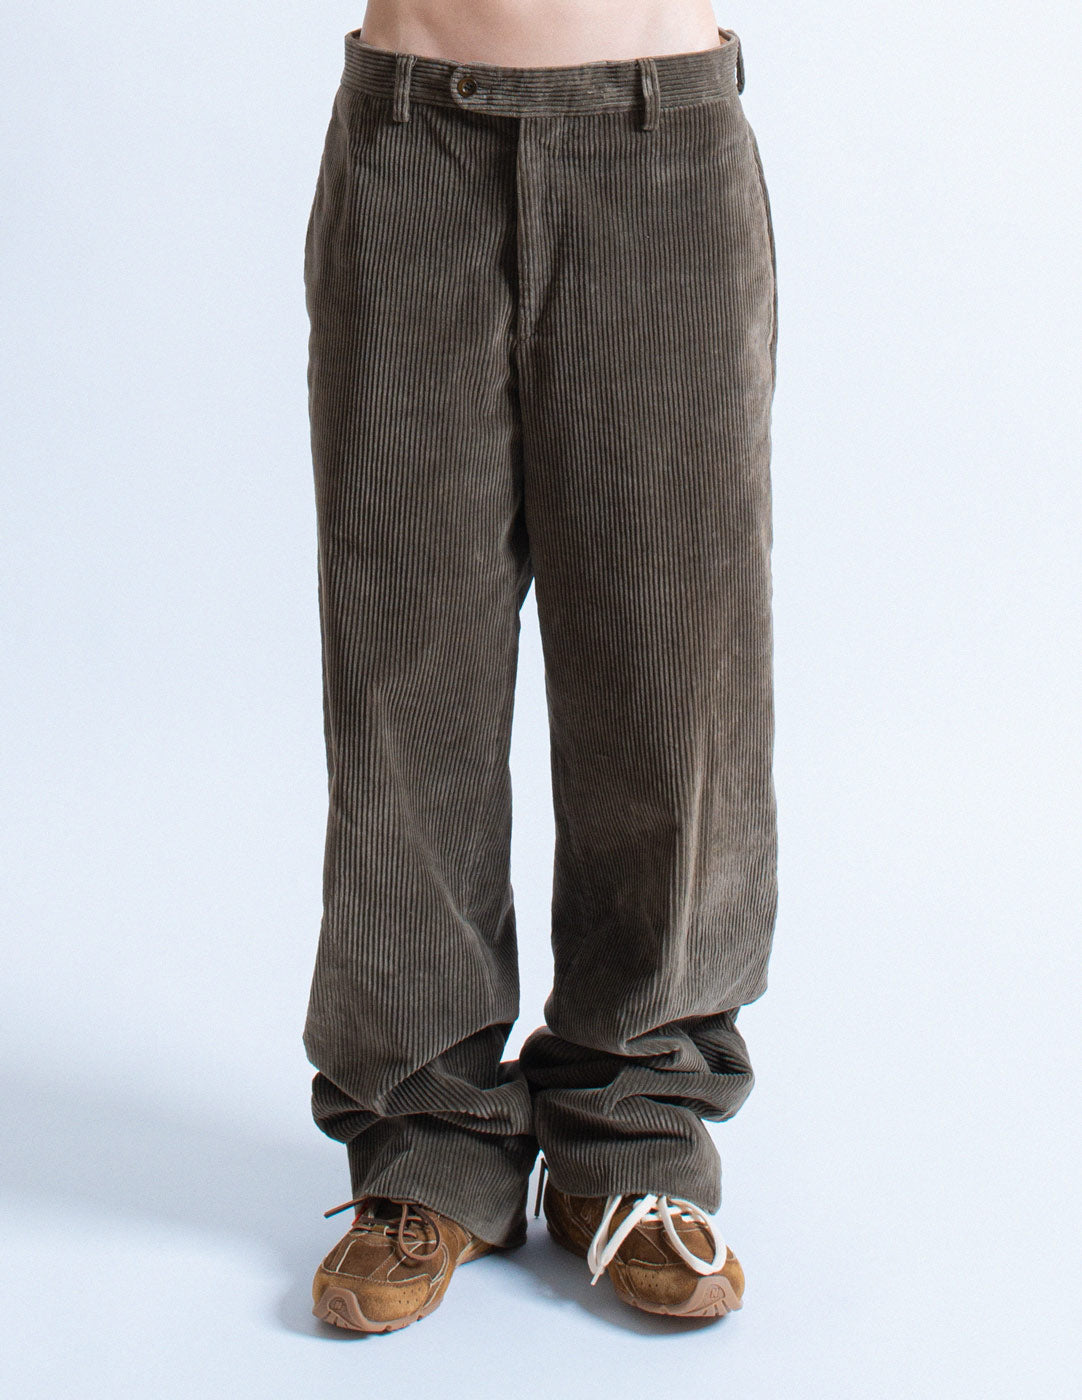 Hermès cotton corduroy trousers front detail